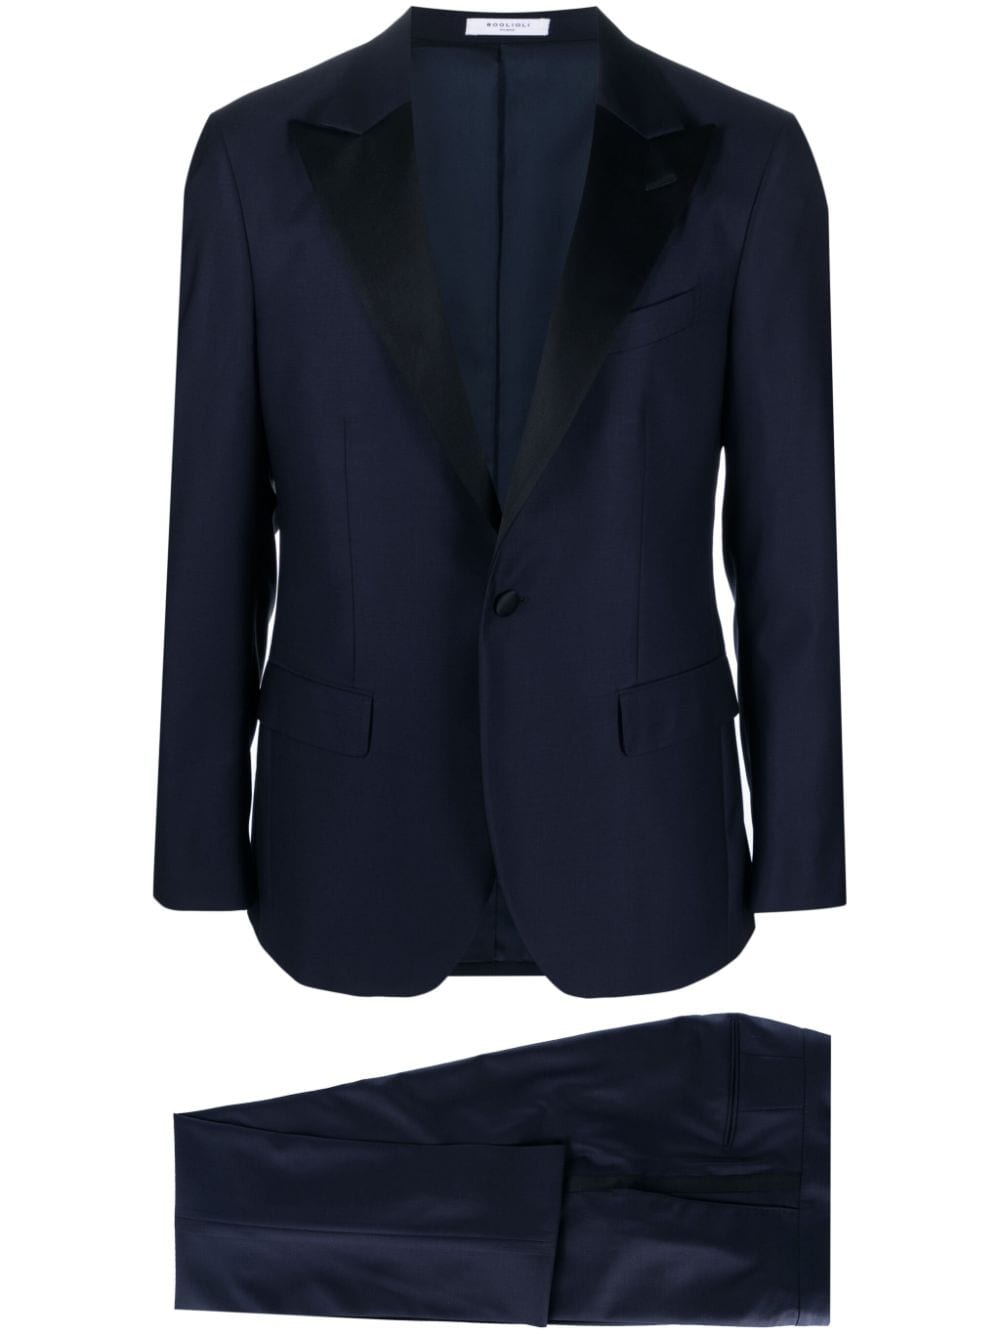 Blue/Black Wool Suit with Peak Lapels for Men